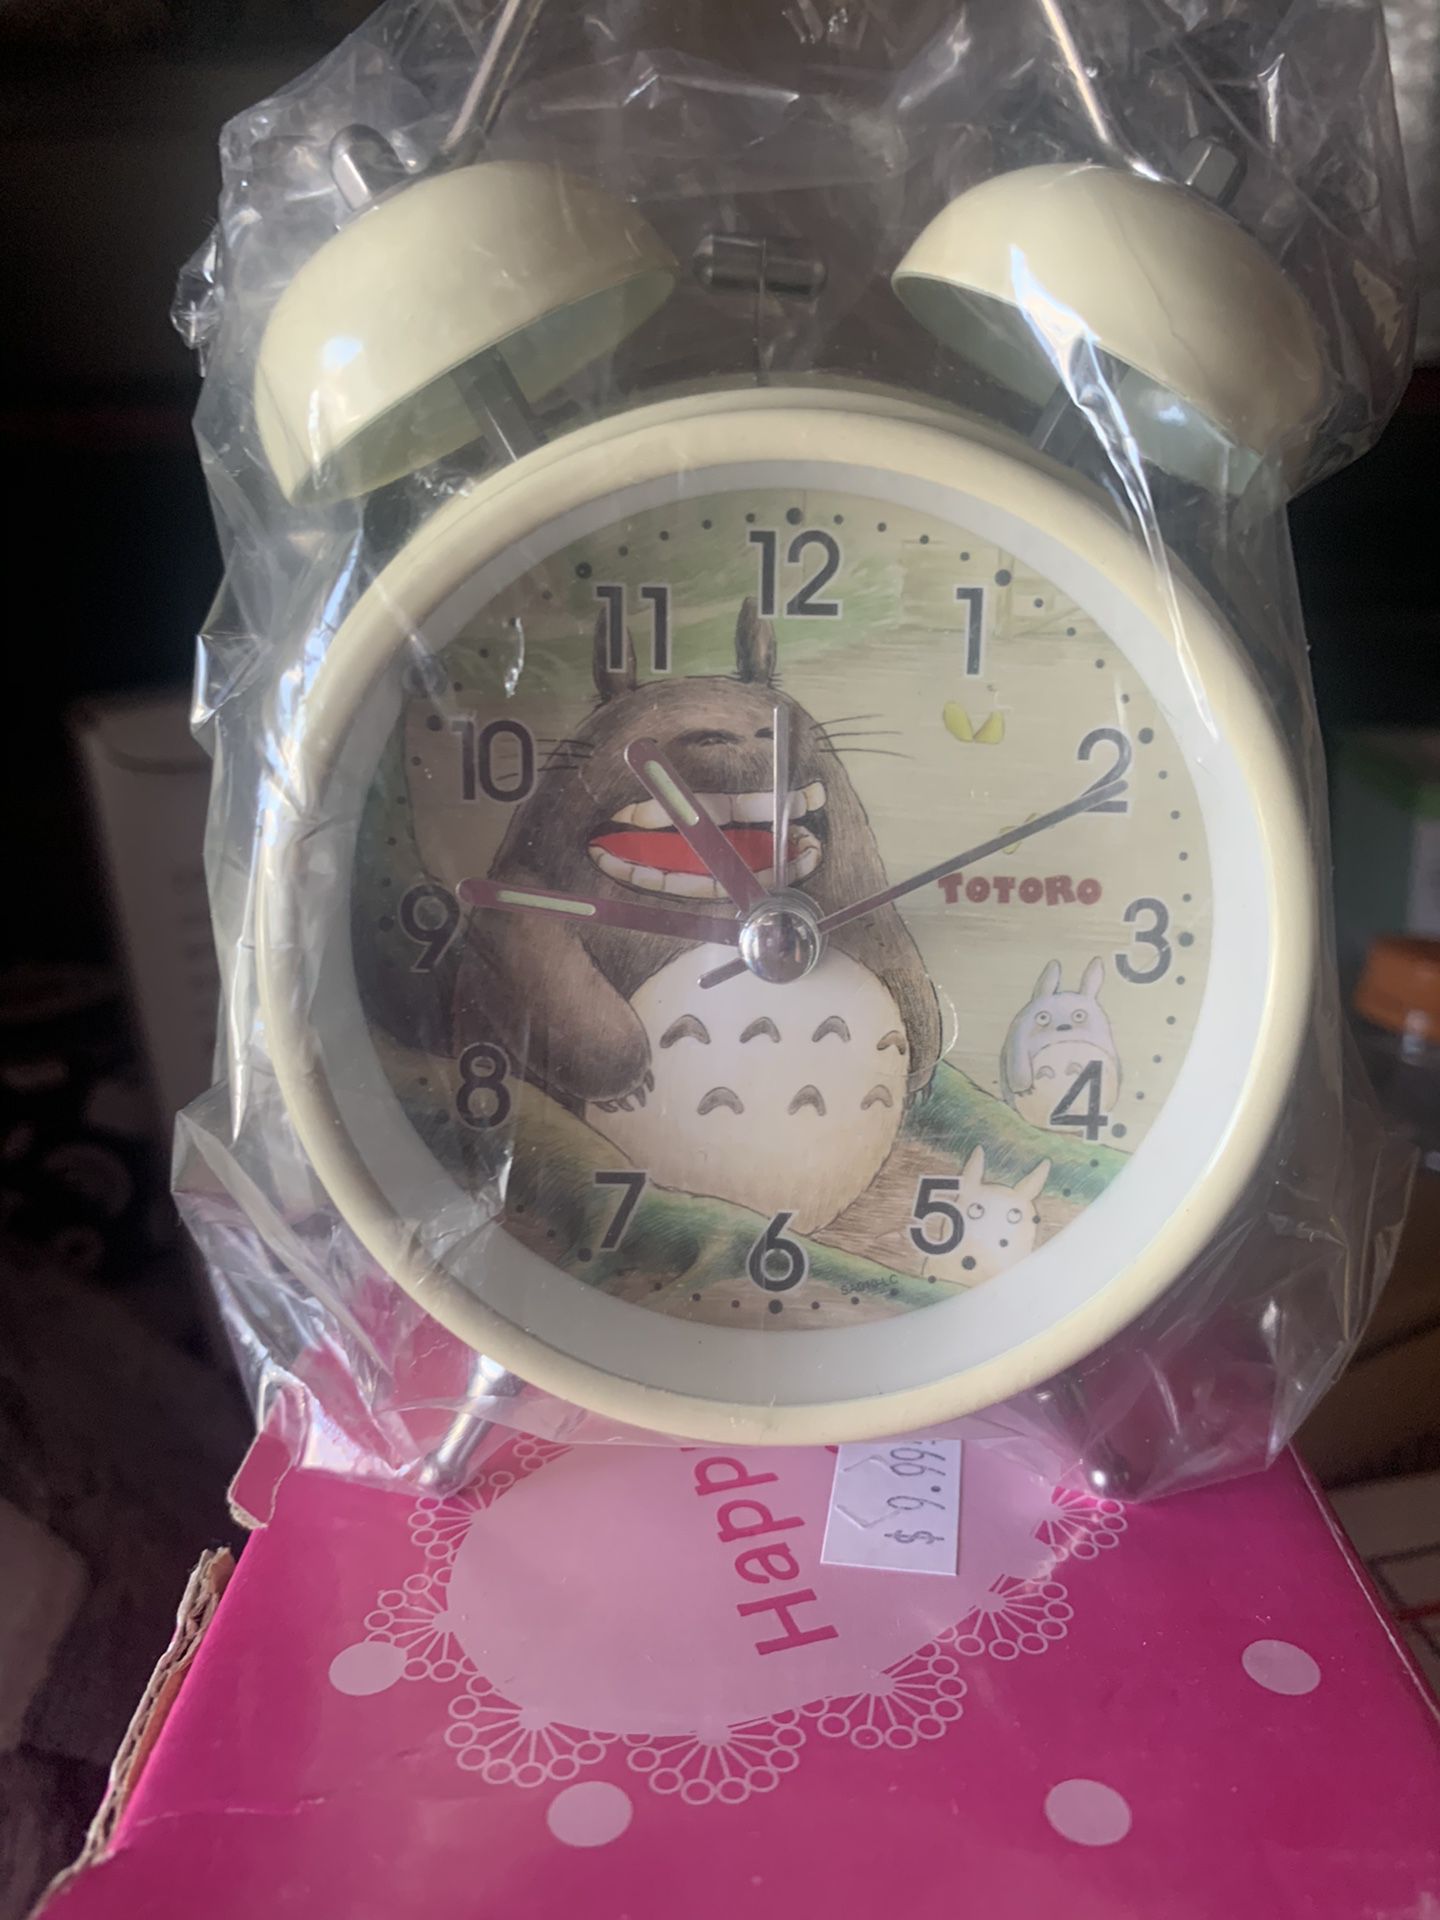 Totoro clock/alarm